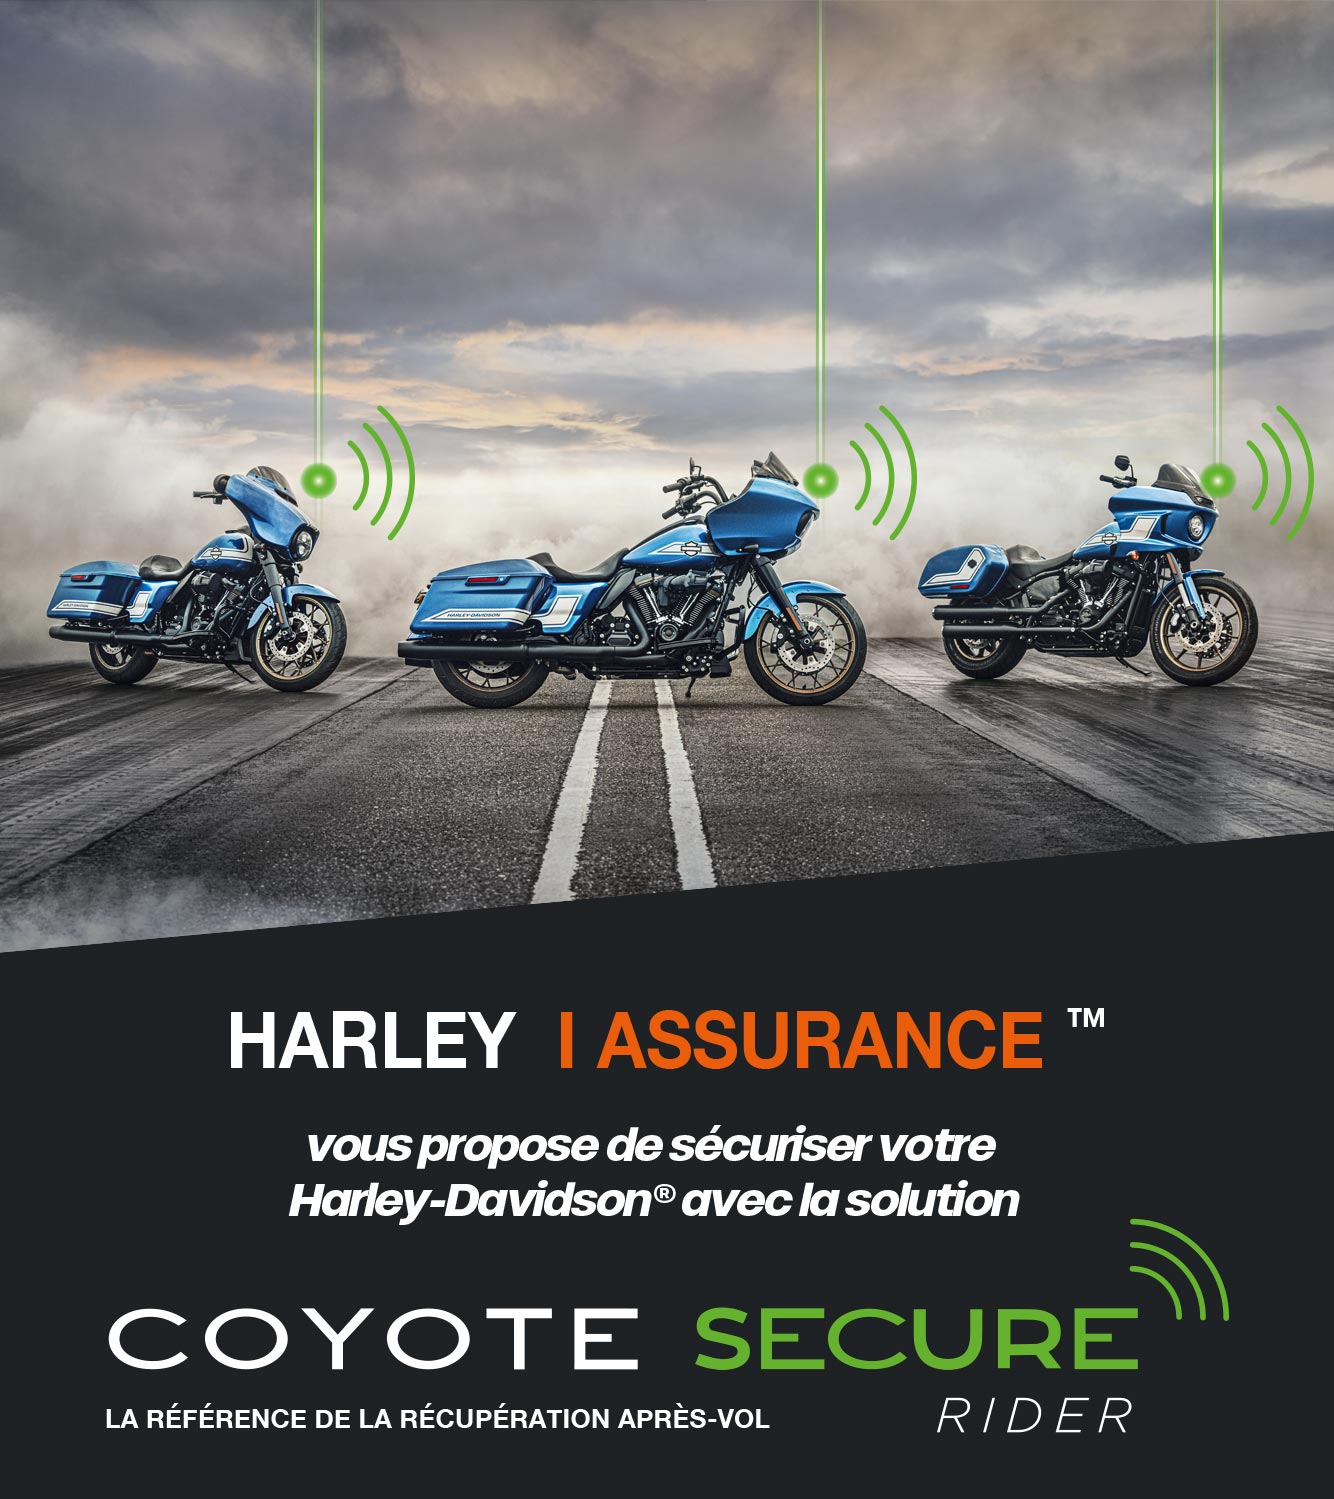 Equipez votre Harley-Davidson® d'un traceur Coyote Secure Rider et bénéficiez d'une remise sur votre cotisation d'assurance.